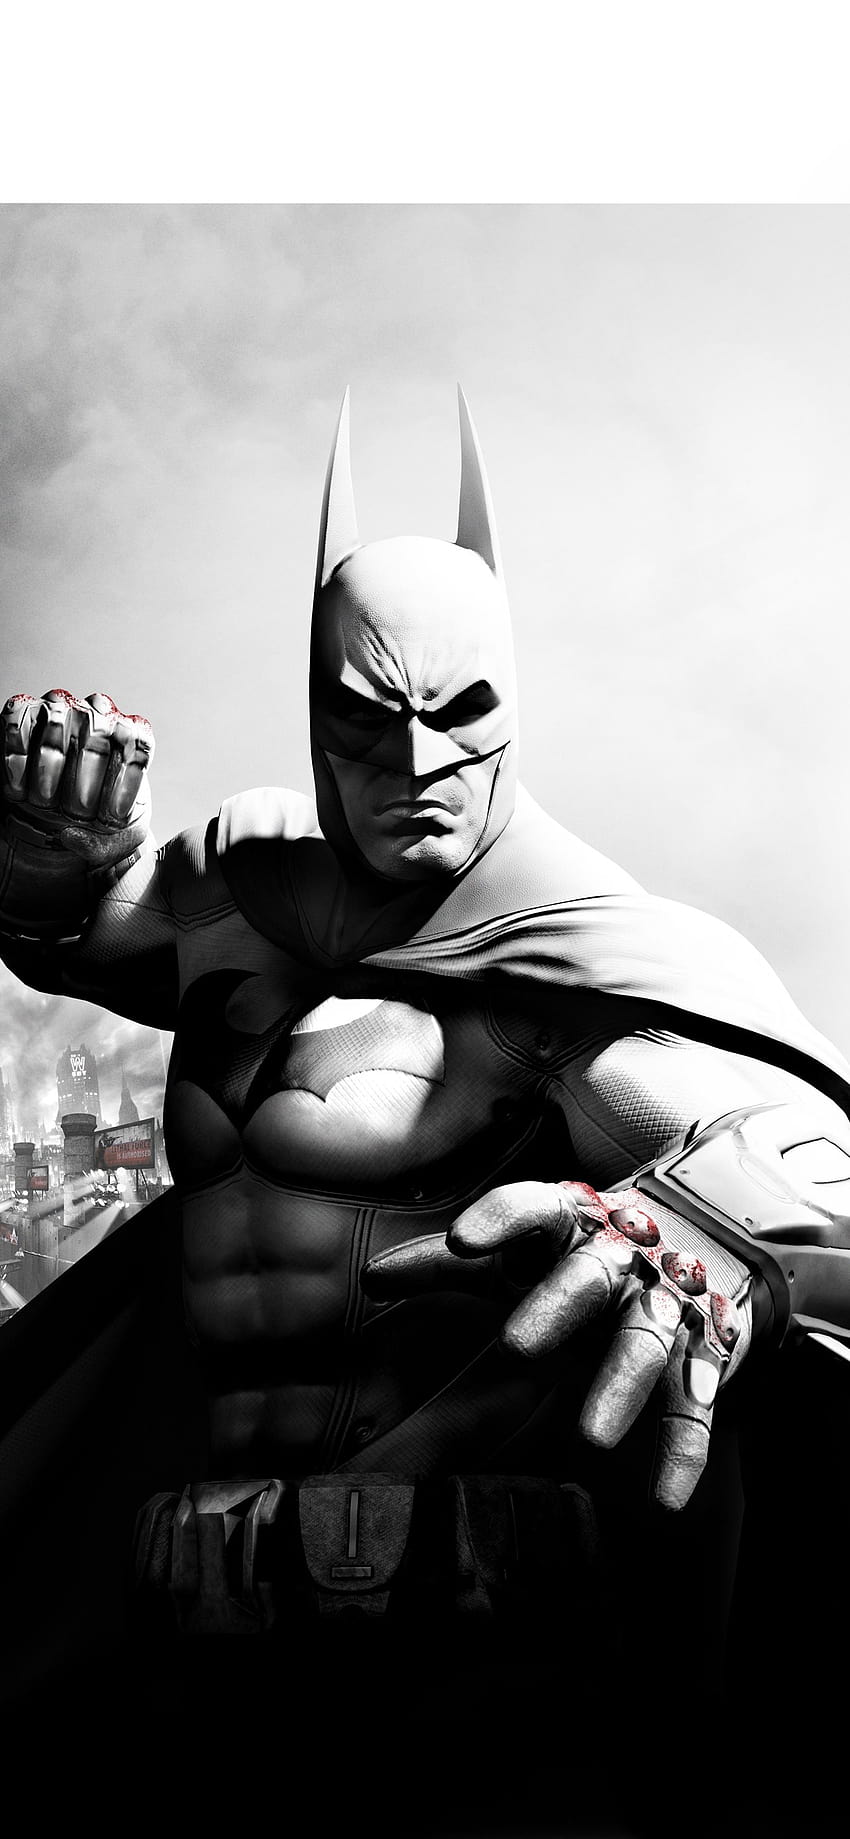 El mejor iPhone de Batman Arkham City, el iPhone de Batman Arkham Knight fondo de pantalla del teléfono